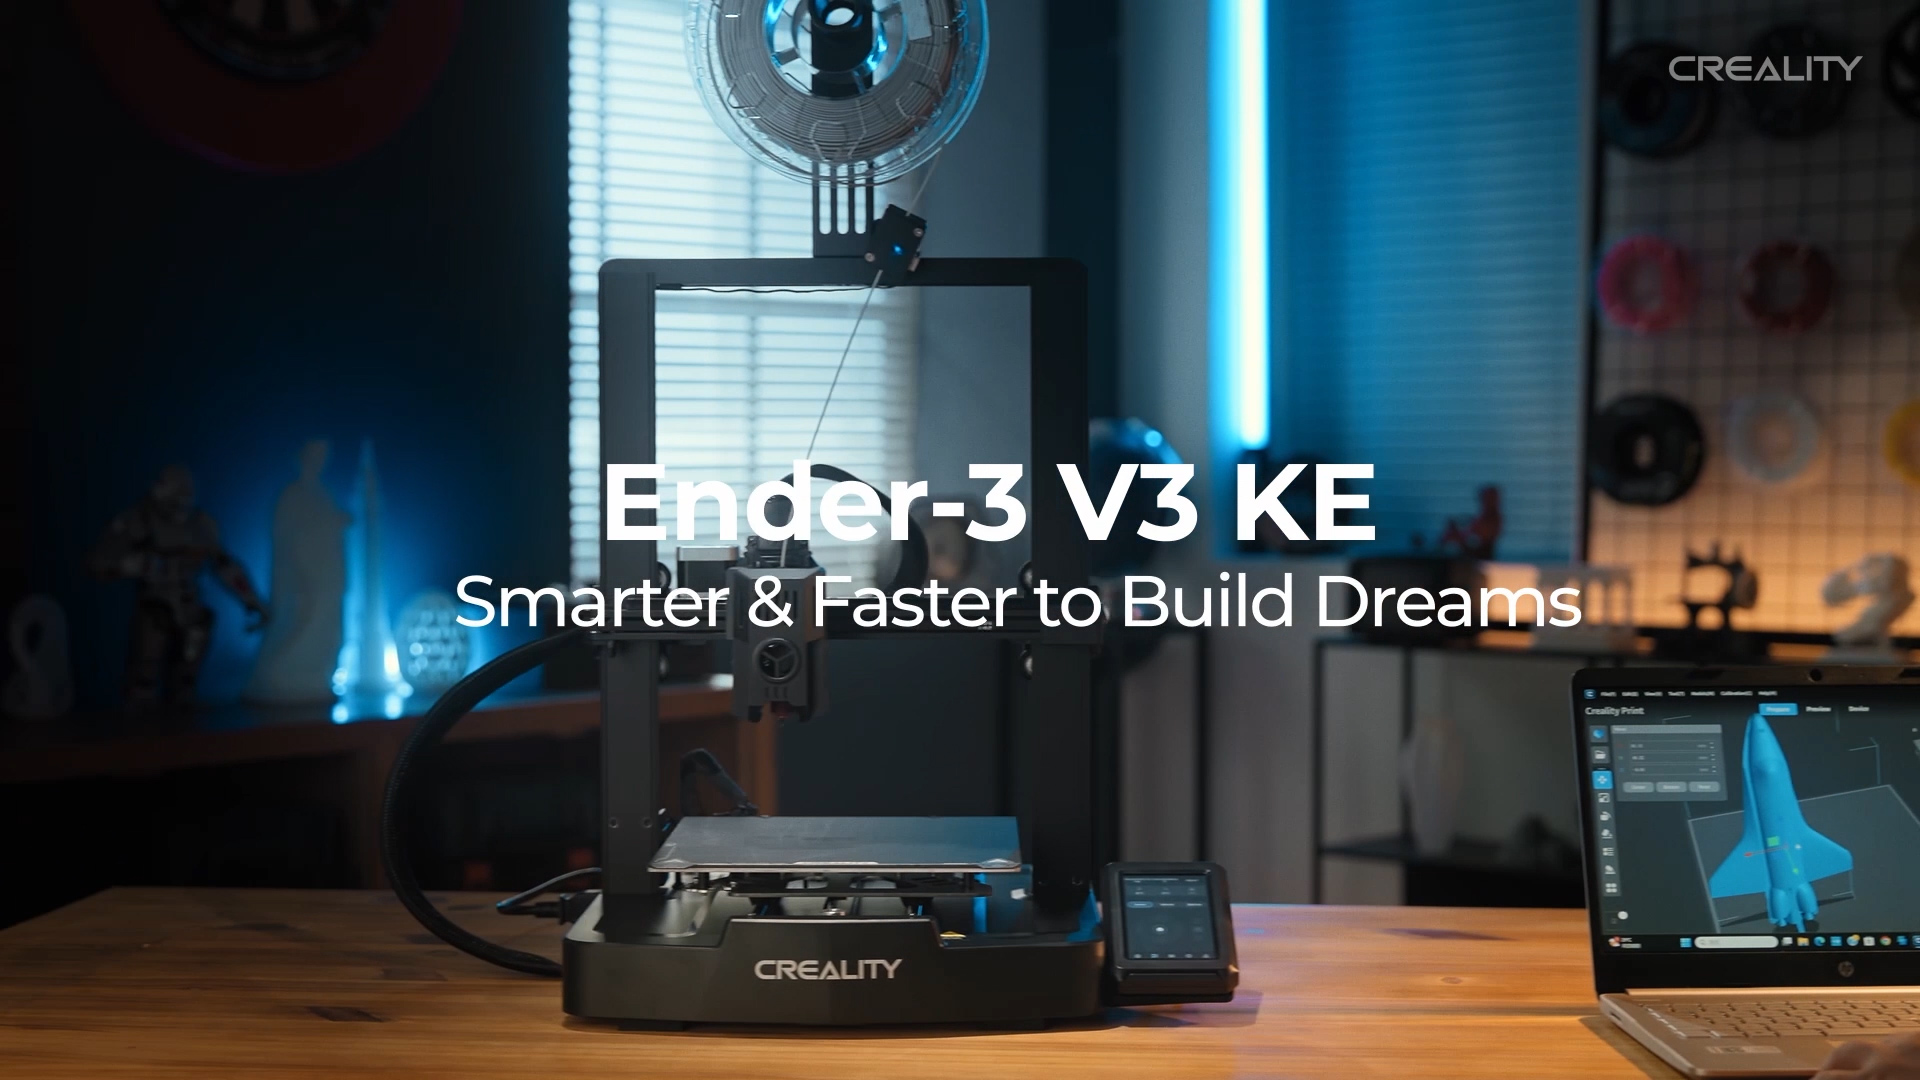 CREALITY ENDER-3 V3 KE